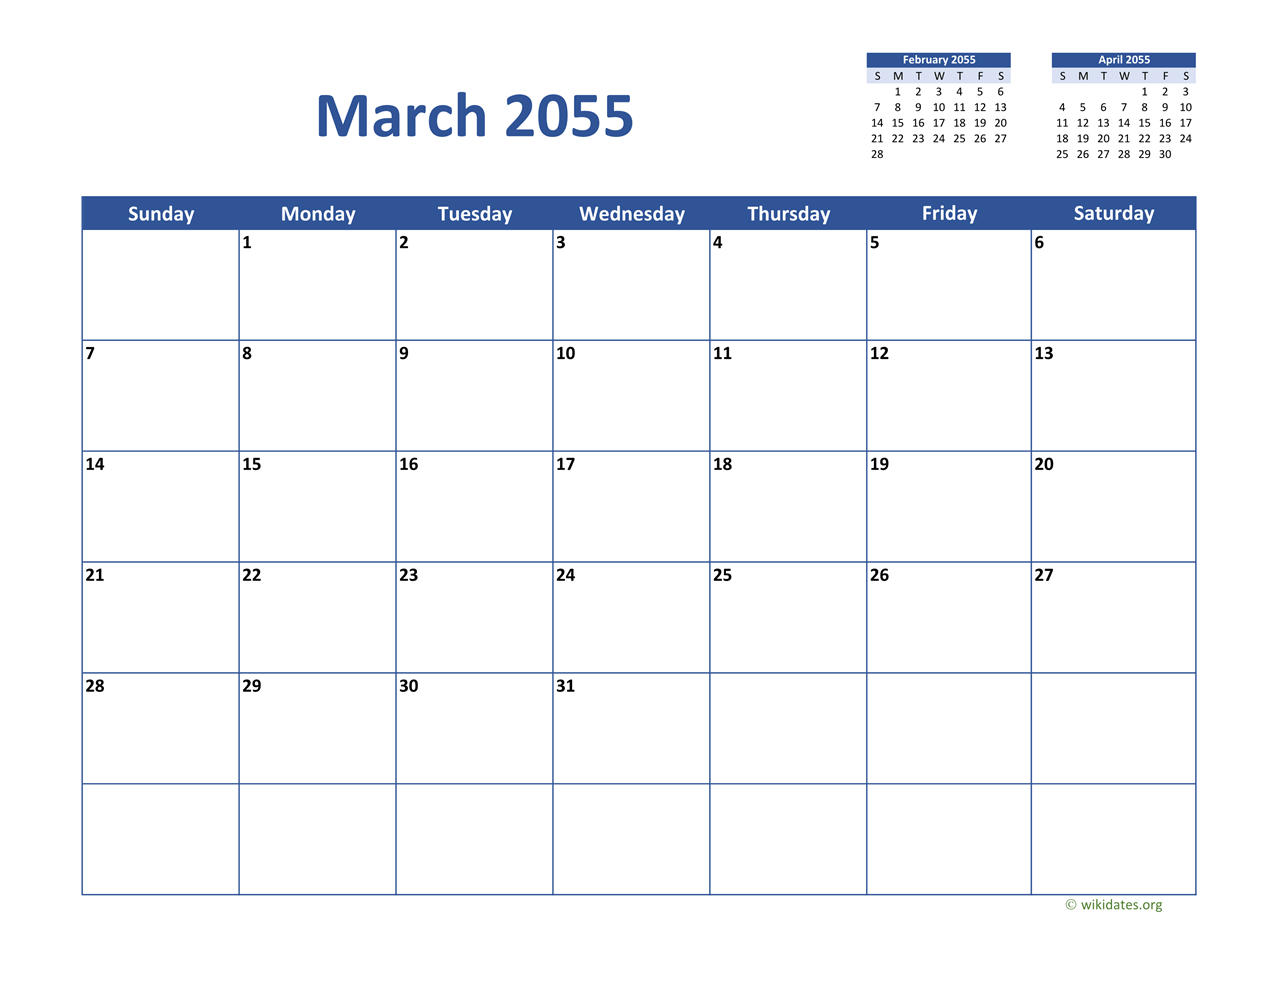 March 2055 Calendar Classic | WikiDates.org